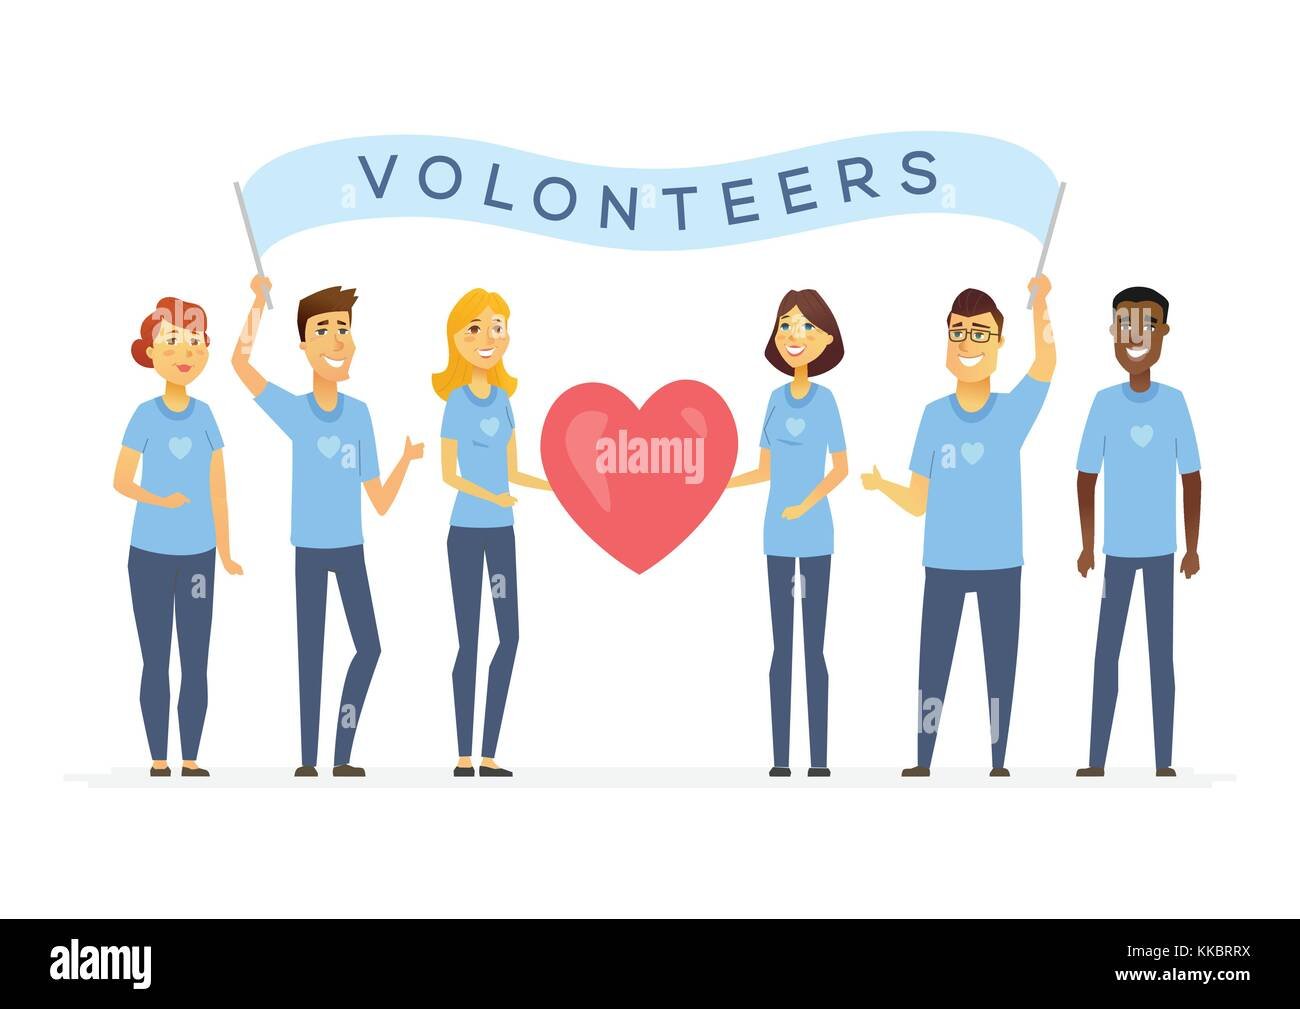 Волонтеры графика. Волонтер мультяшный. Стикеры волонтеры. Волонтеры иллюстрация. Стикеры волонтерство.